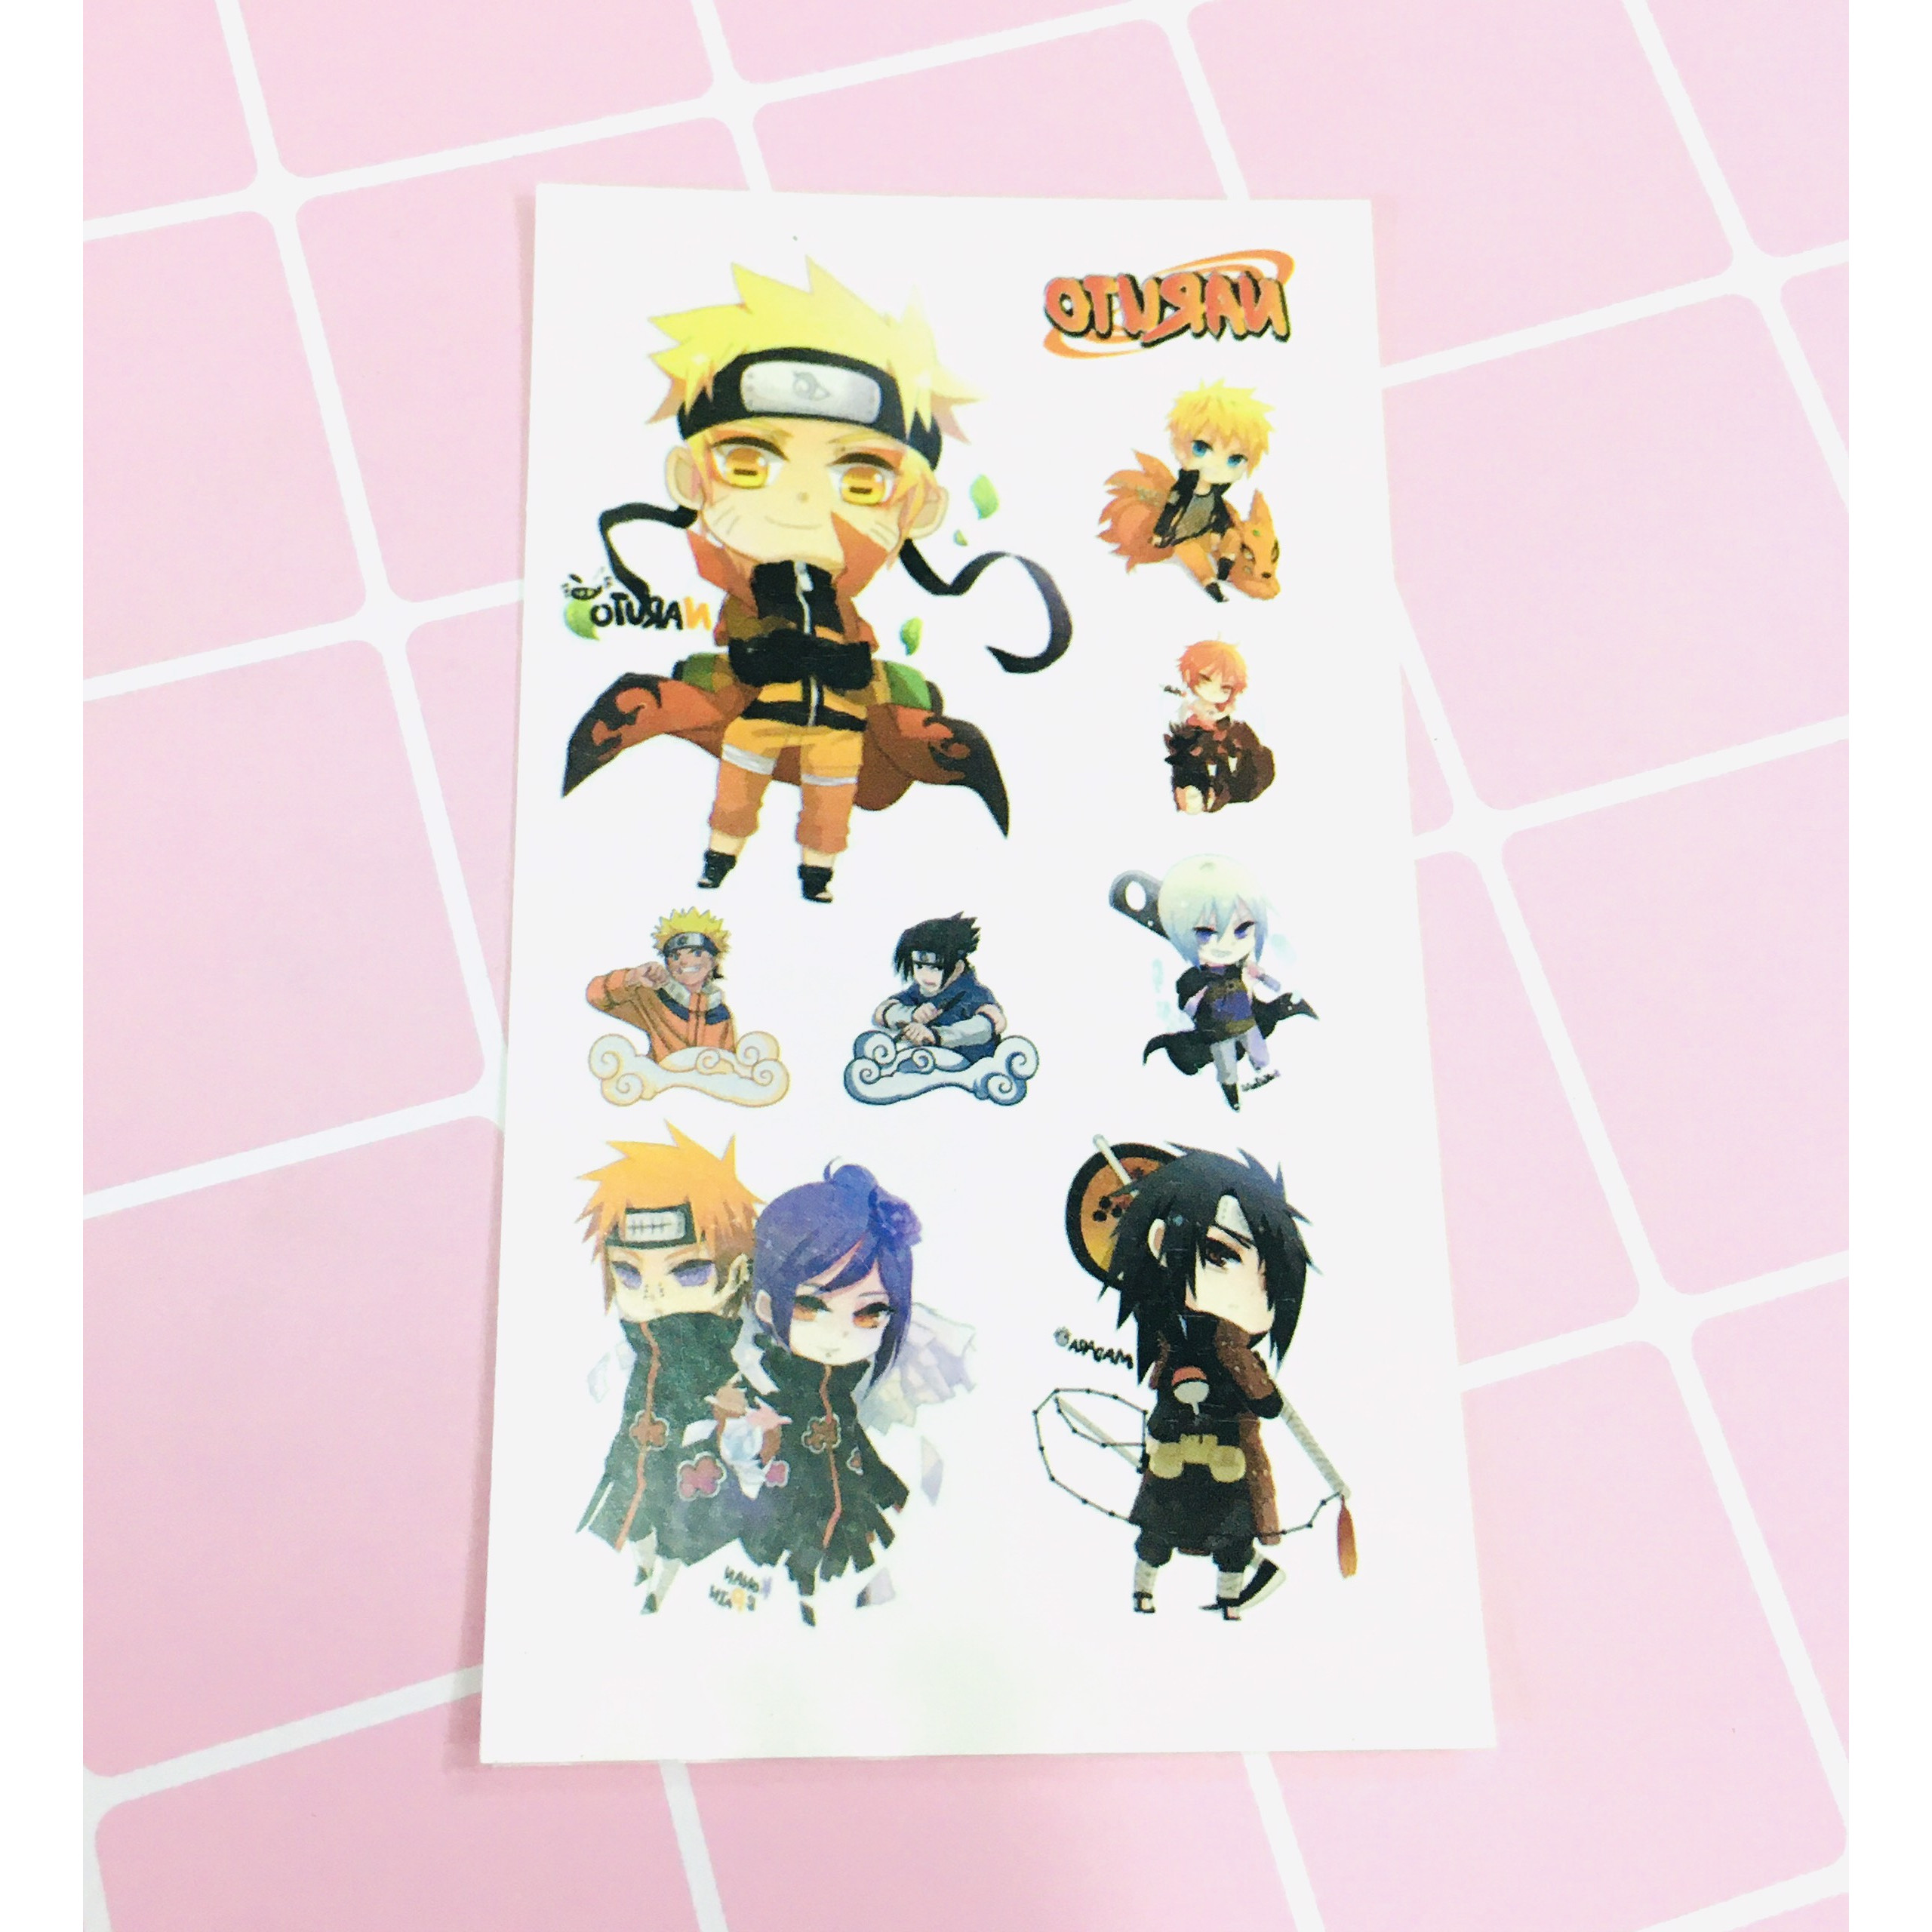 Naruto Shippuden- Die Cut Naruto Sticker 3.5